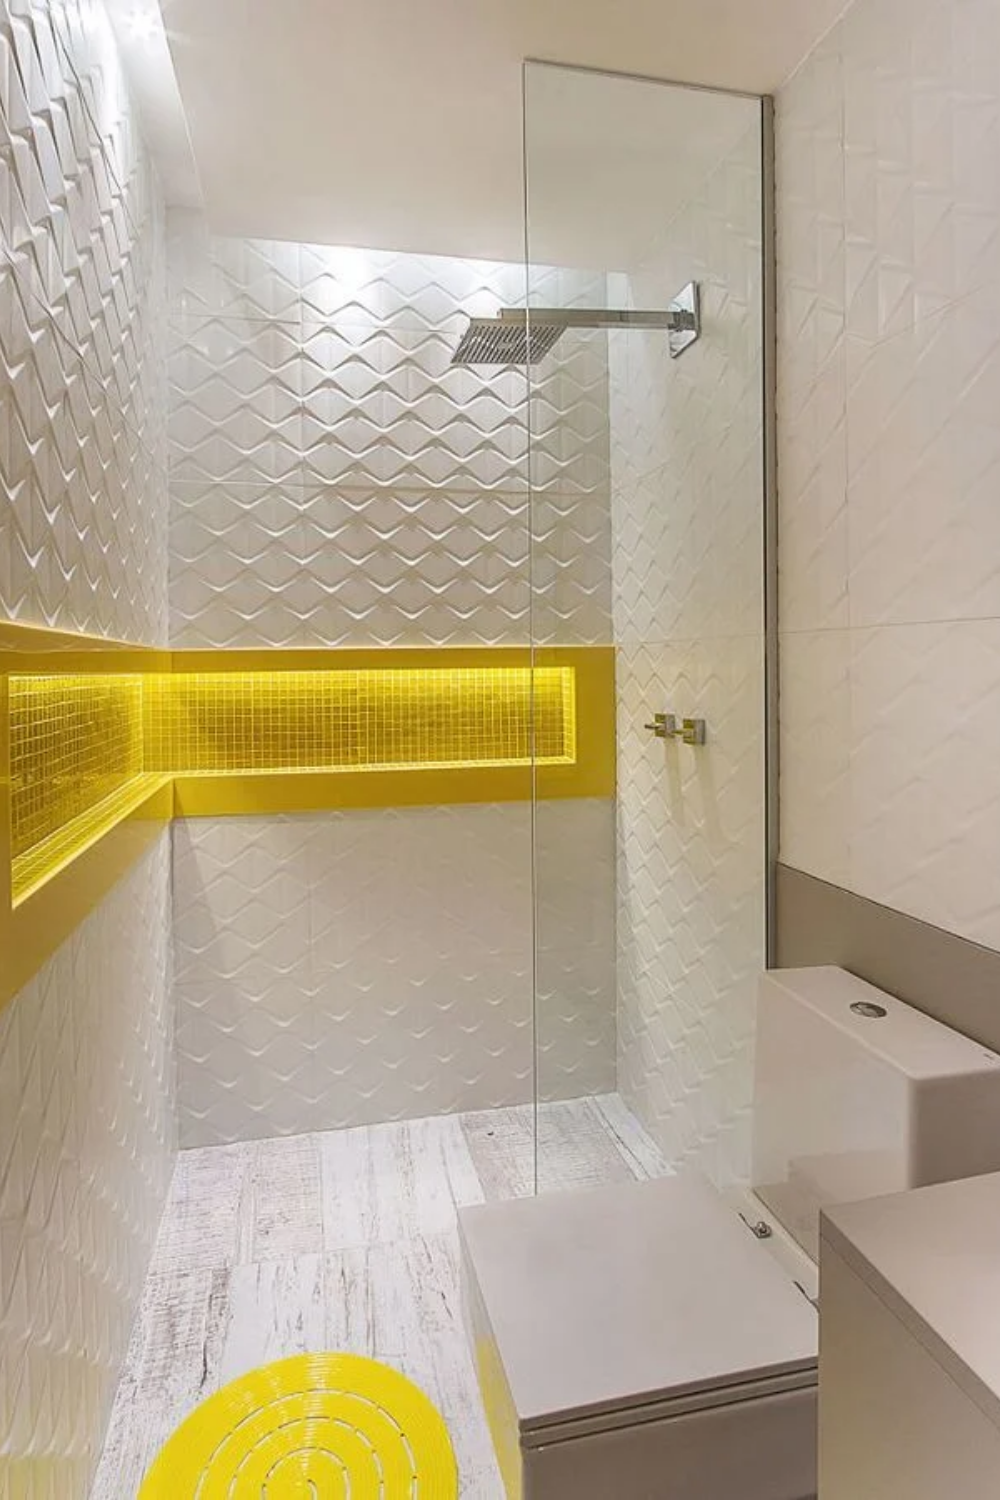 Bí quyết cho căn phòng tắm luôn tươi sáng, sinh động là bổ sung gam màu vàng nắng - Ảnh 4.